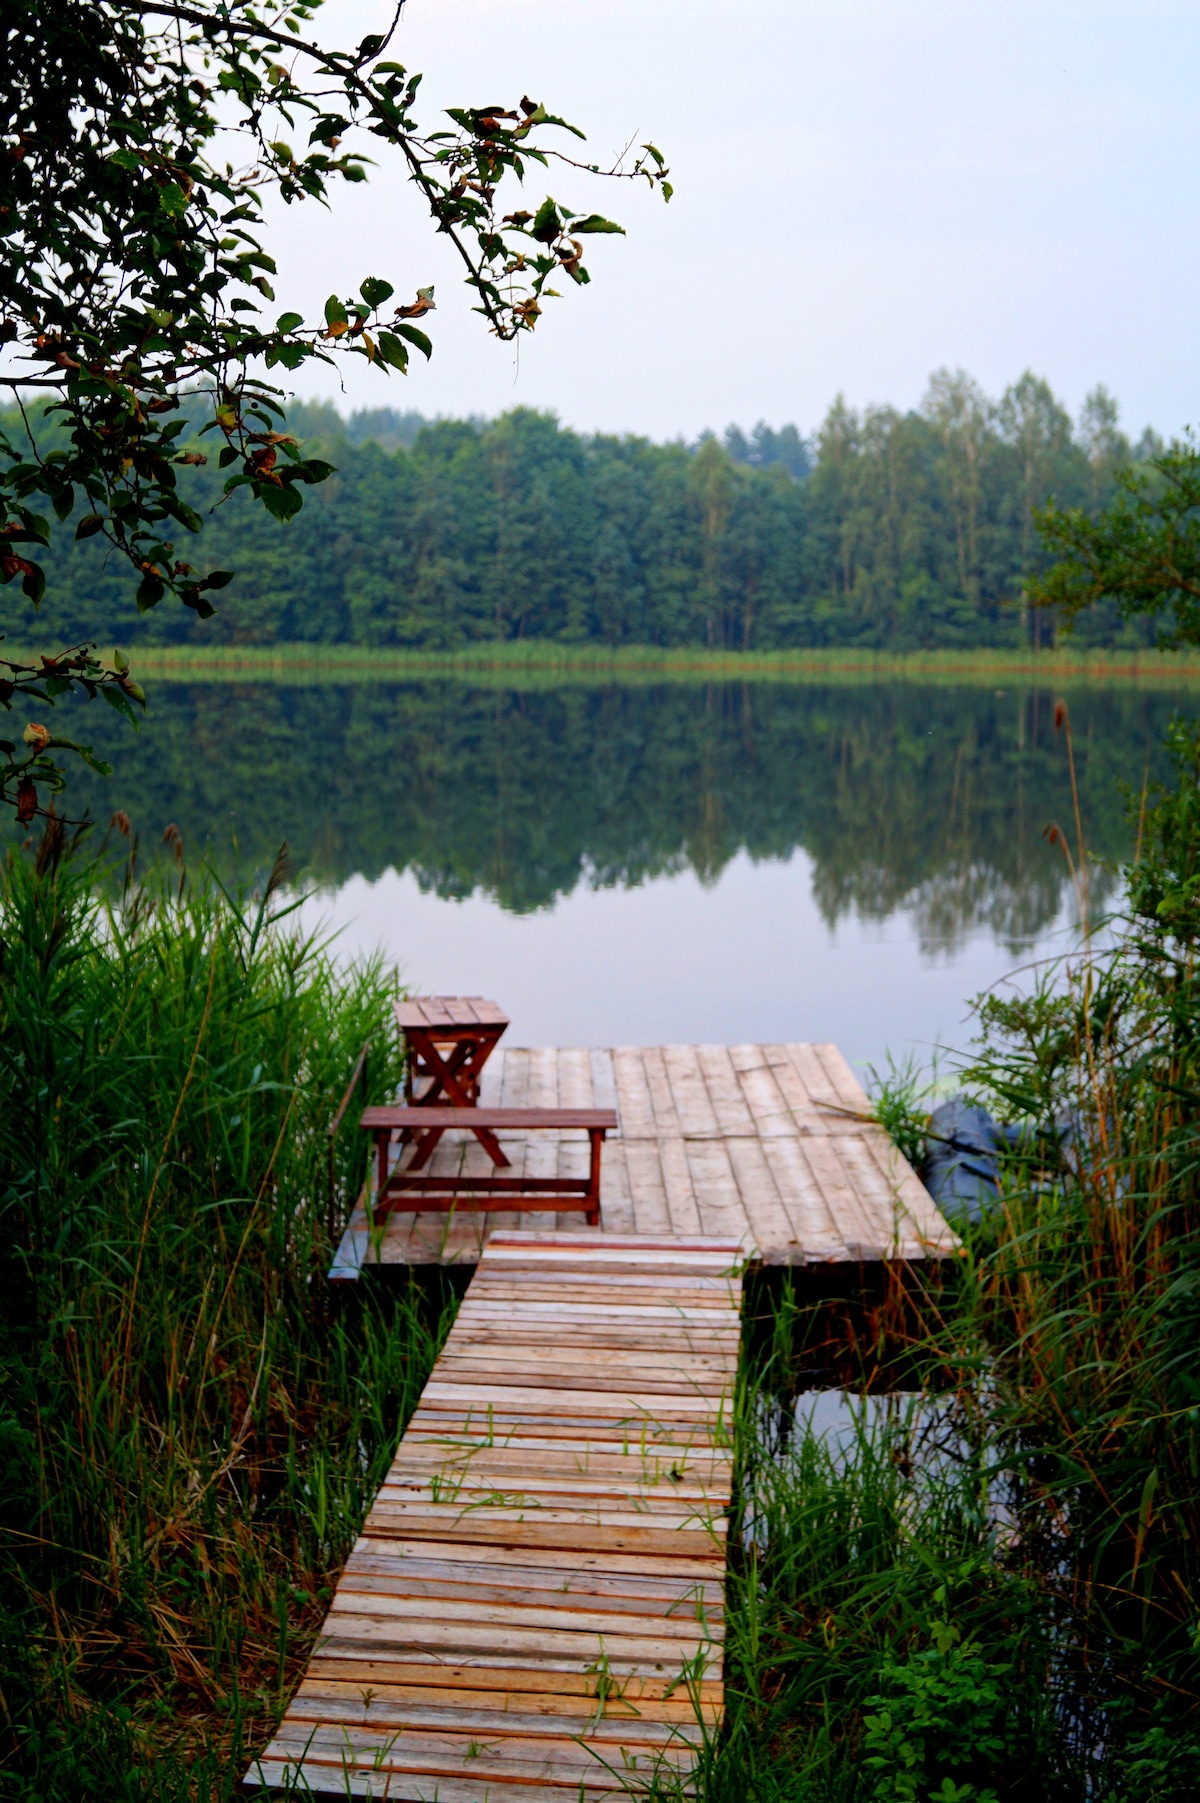 Zamoshye湖畔的Marusina小屋庄园